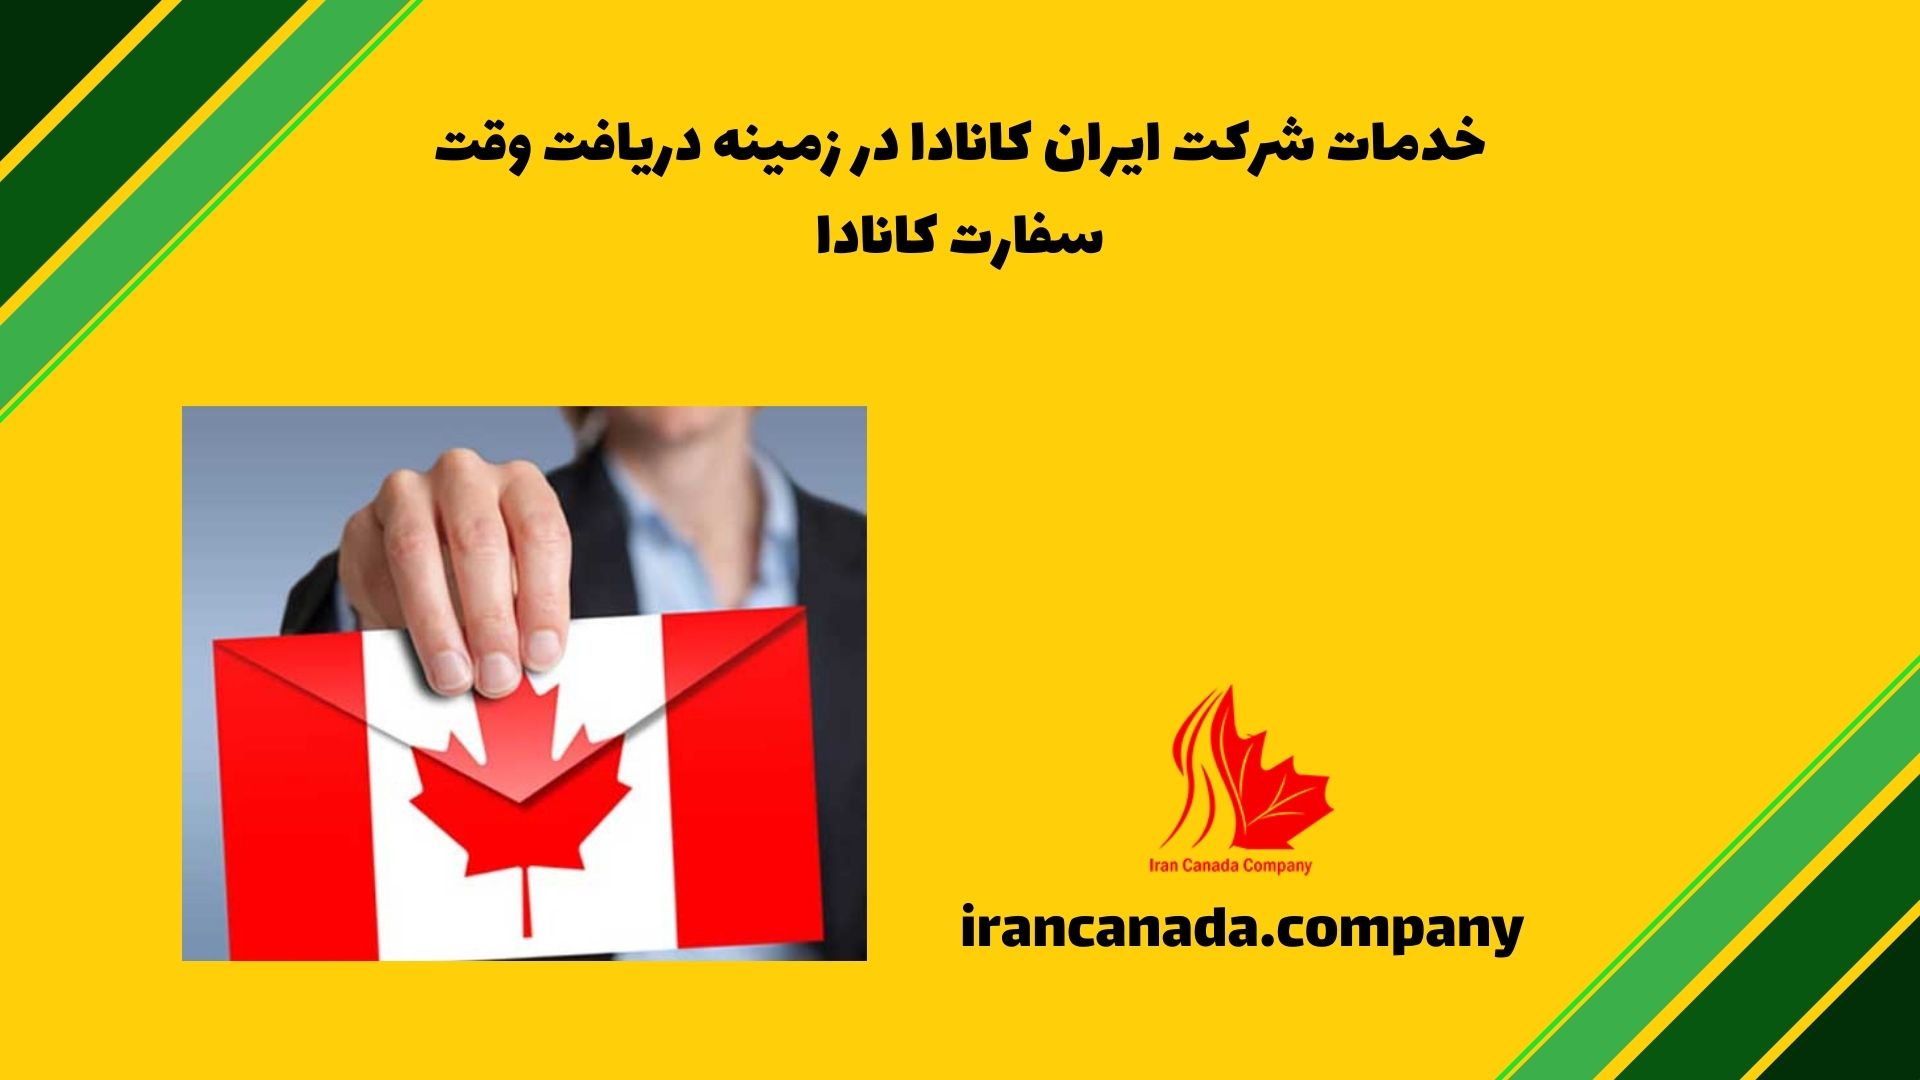 خدمات شرکت ایران کانادا در زمینه دریافت وقت سفارت کانادا